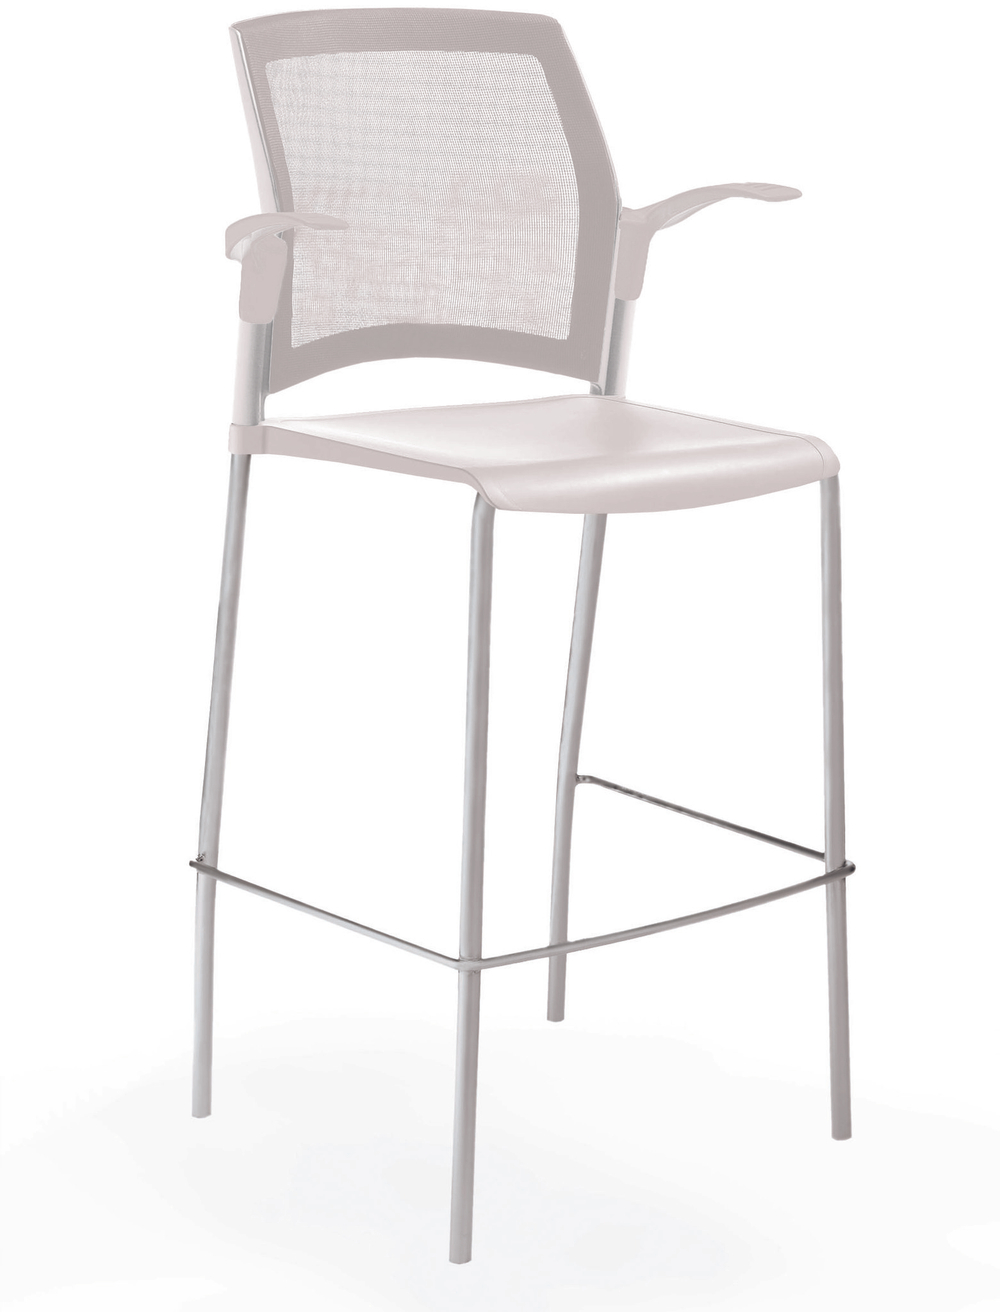 стул Rewind стул барный на 4 ногах, каркас серый, пластик белый, спинка-сетка, с открытыми подлокотниками